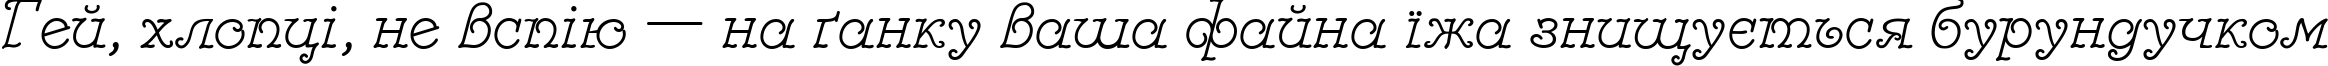 Пример написания шрифтом Modestina текста на украинском